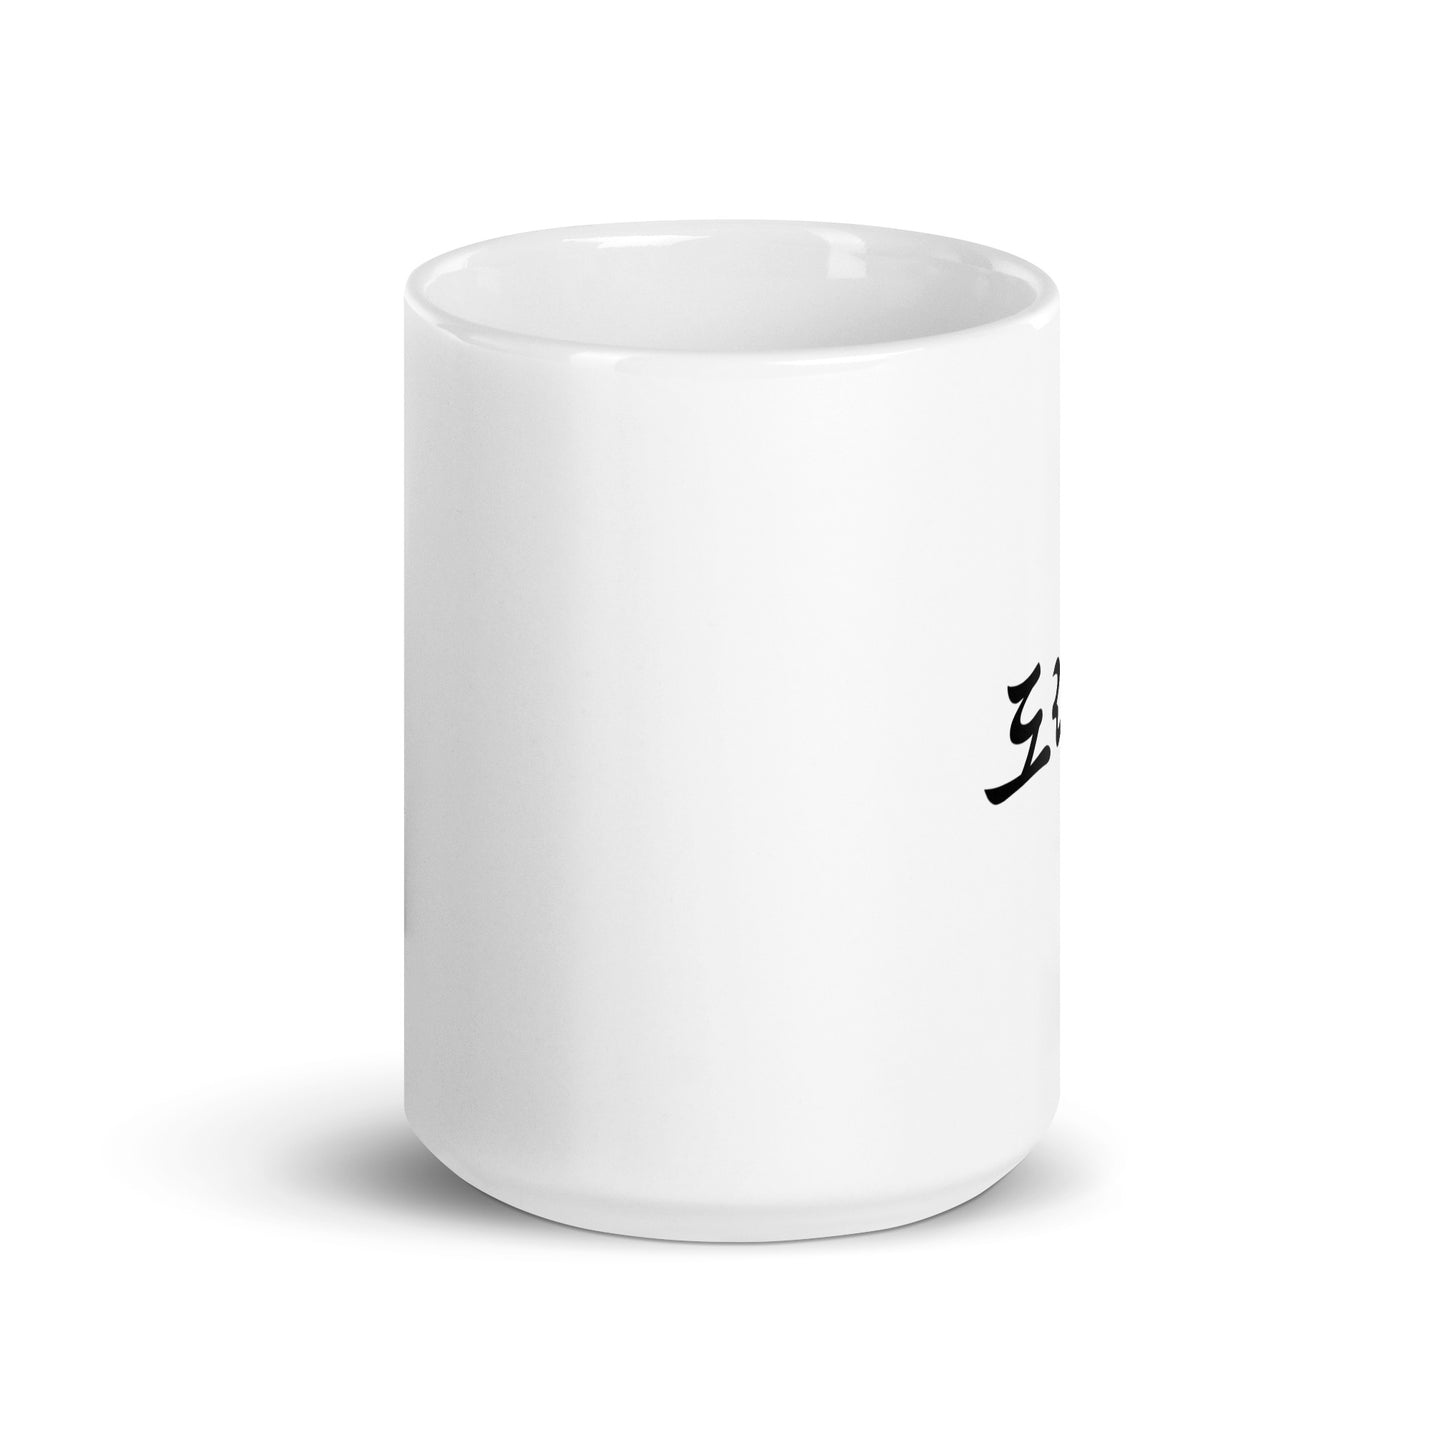 Doris in Hangul Custom Name Gift Ceramic Mug